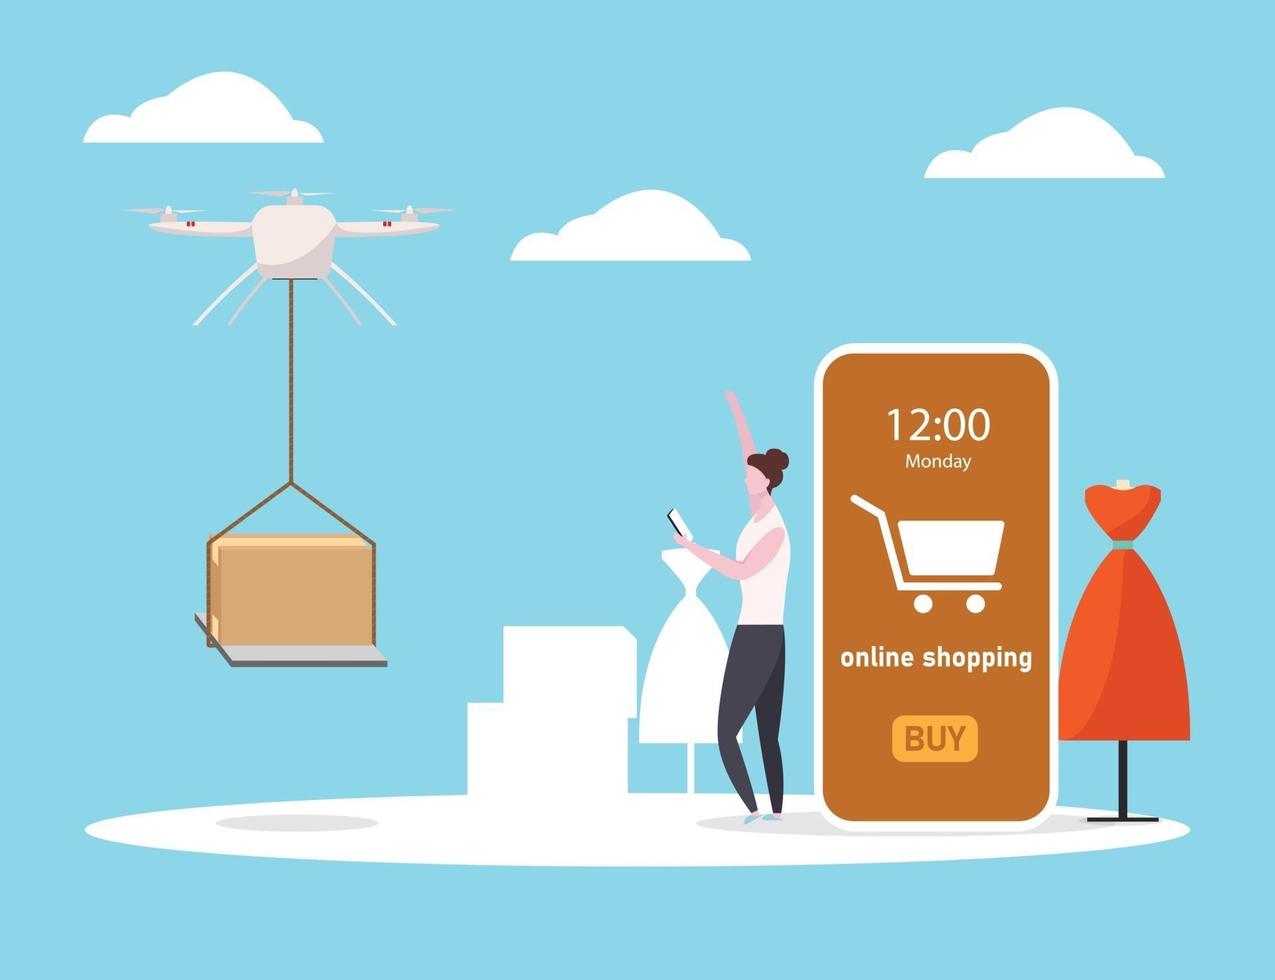 levering drone om online te winkelen op smartphone, vector illustratie vlakke stijl